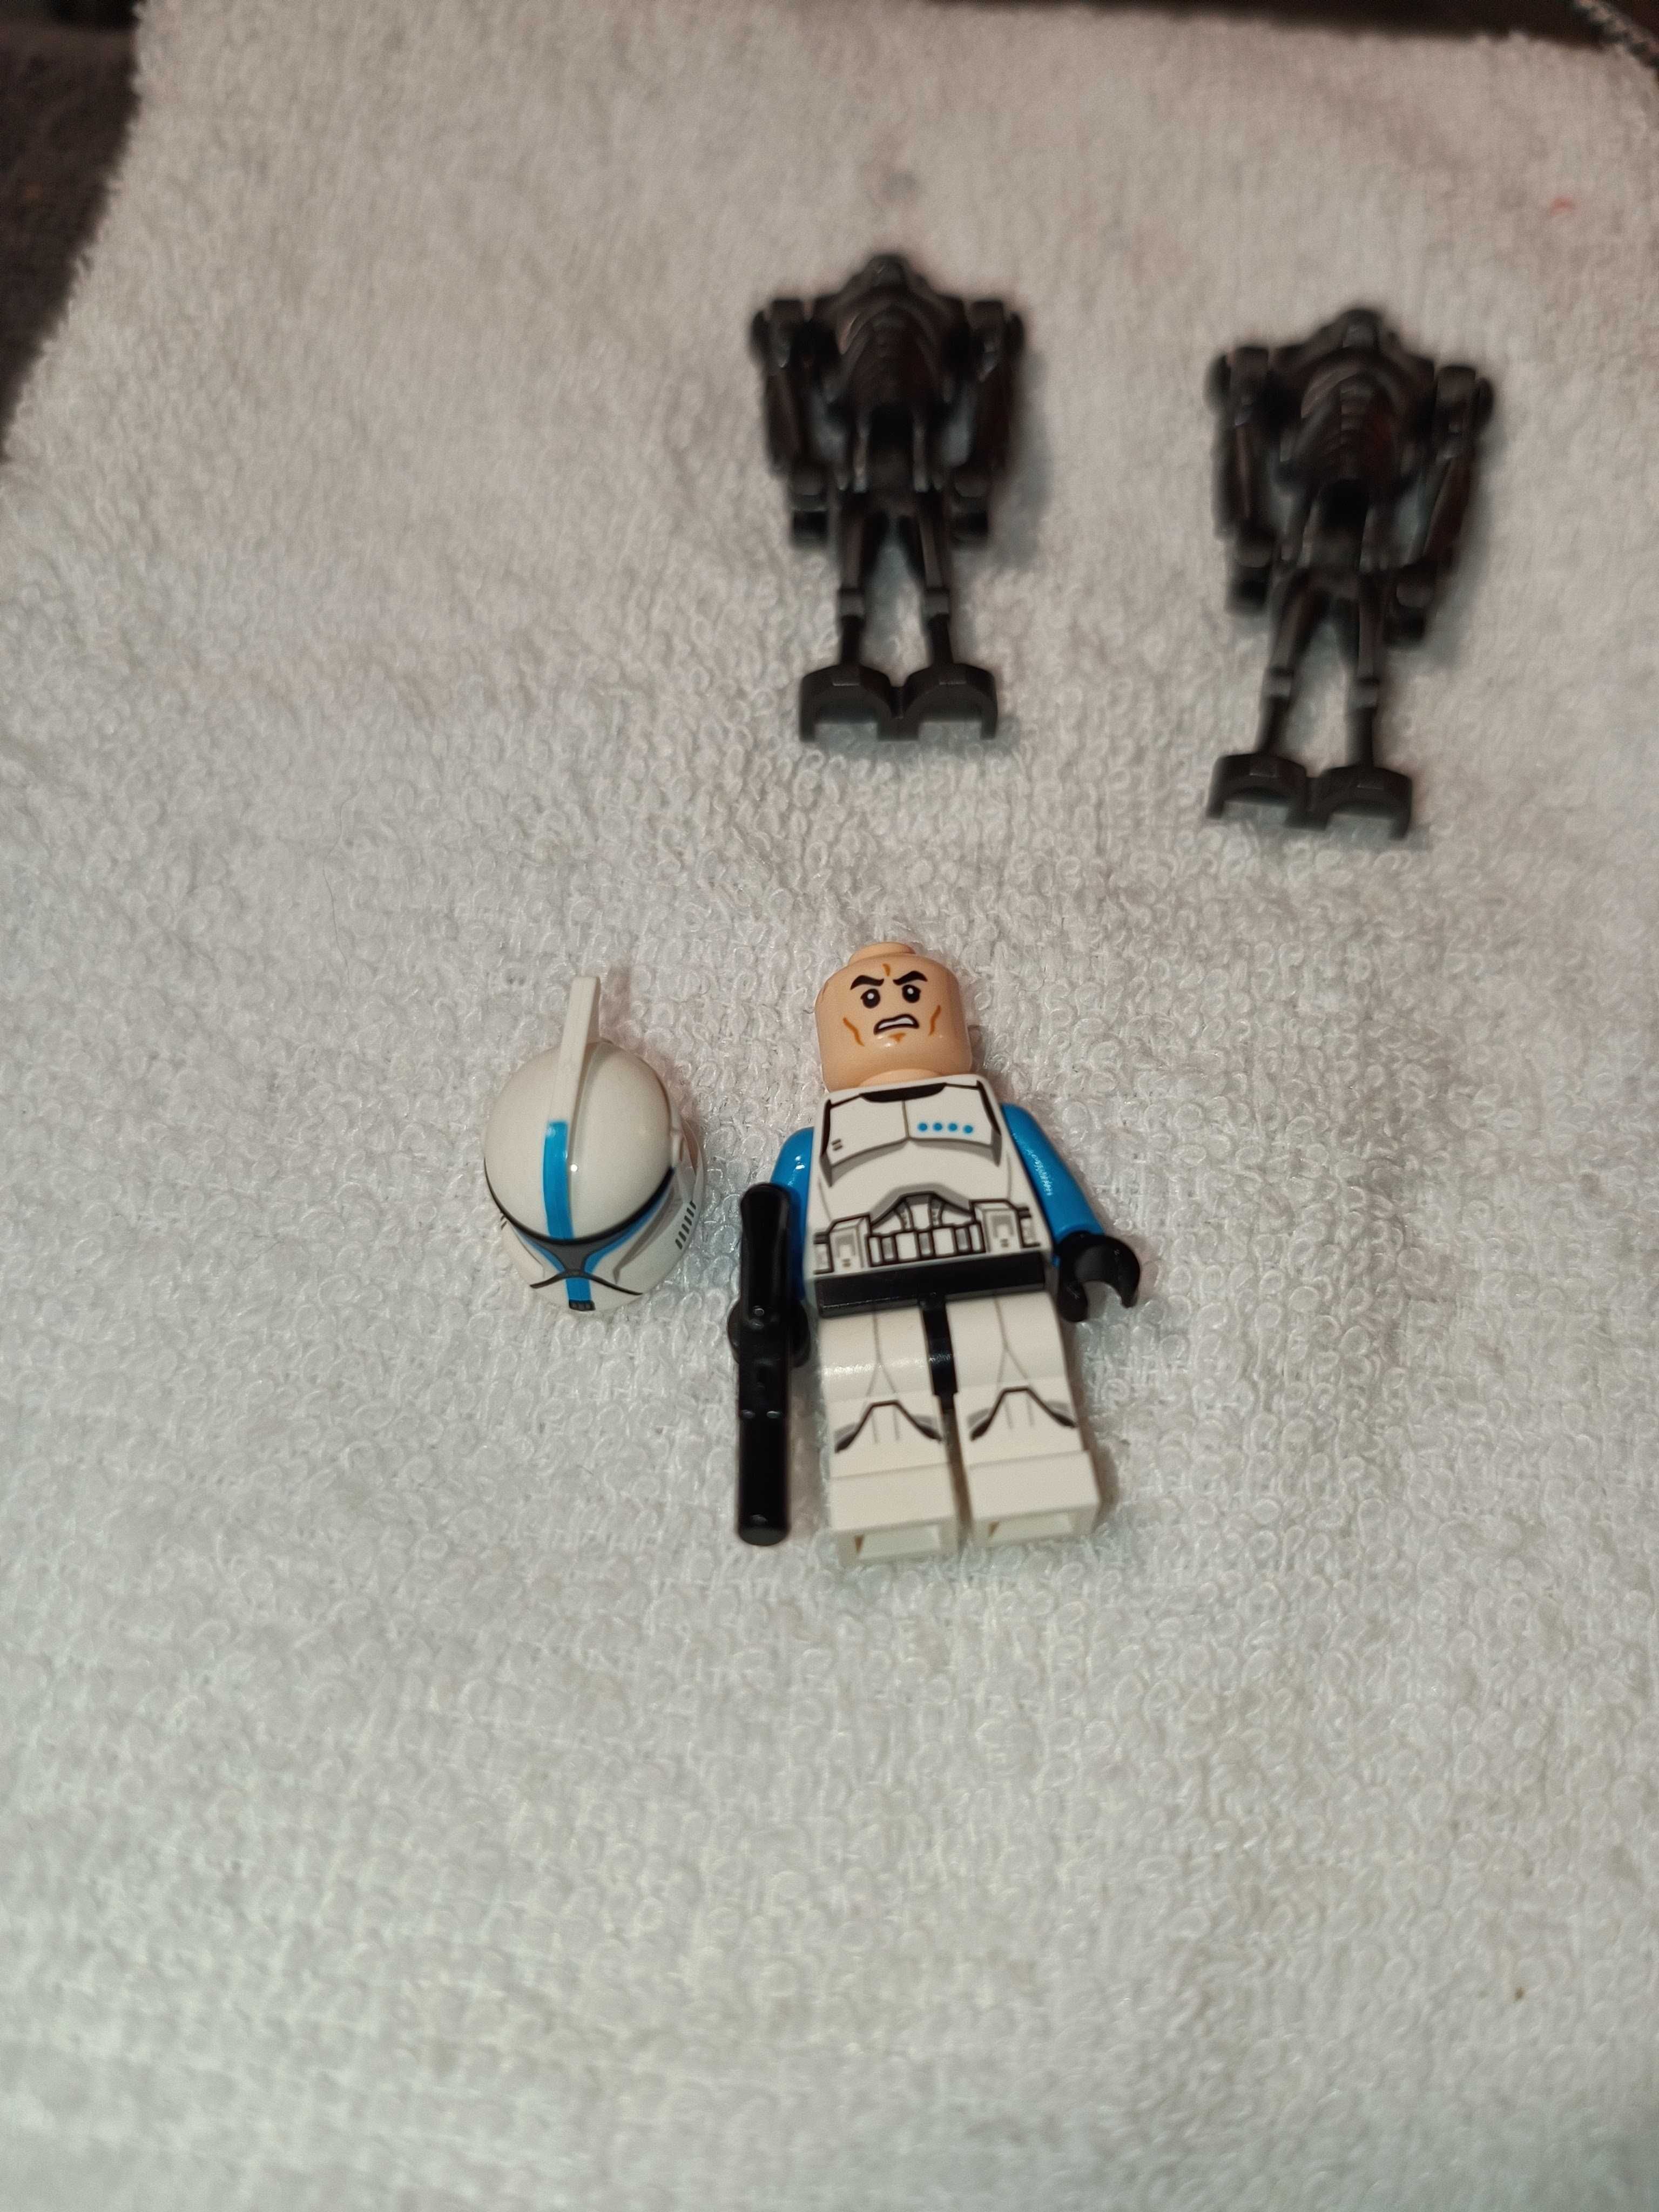 LEGO 75085 Hailfire droid